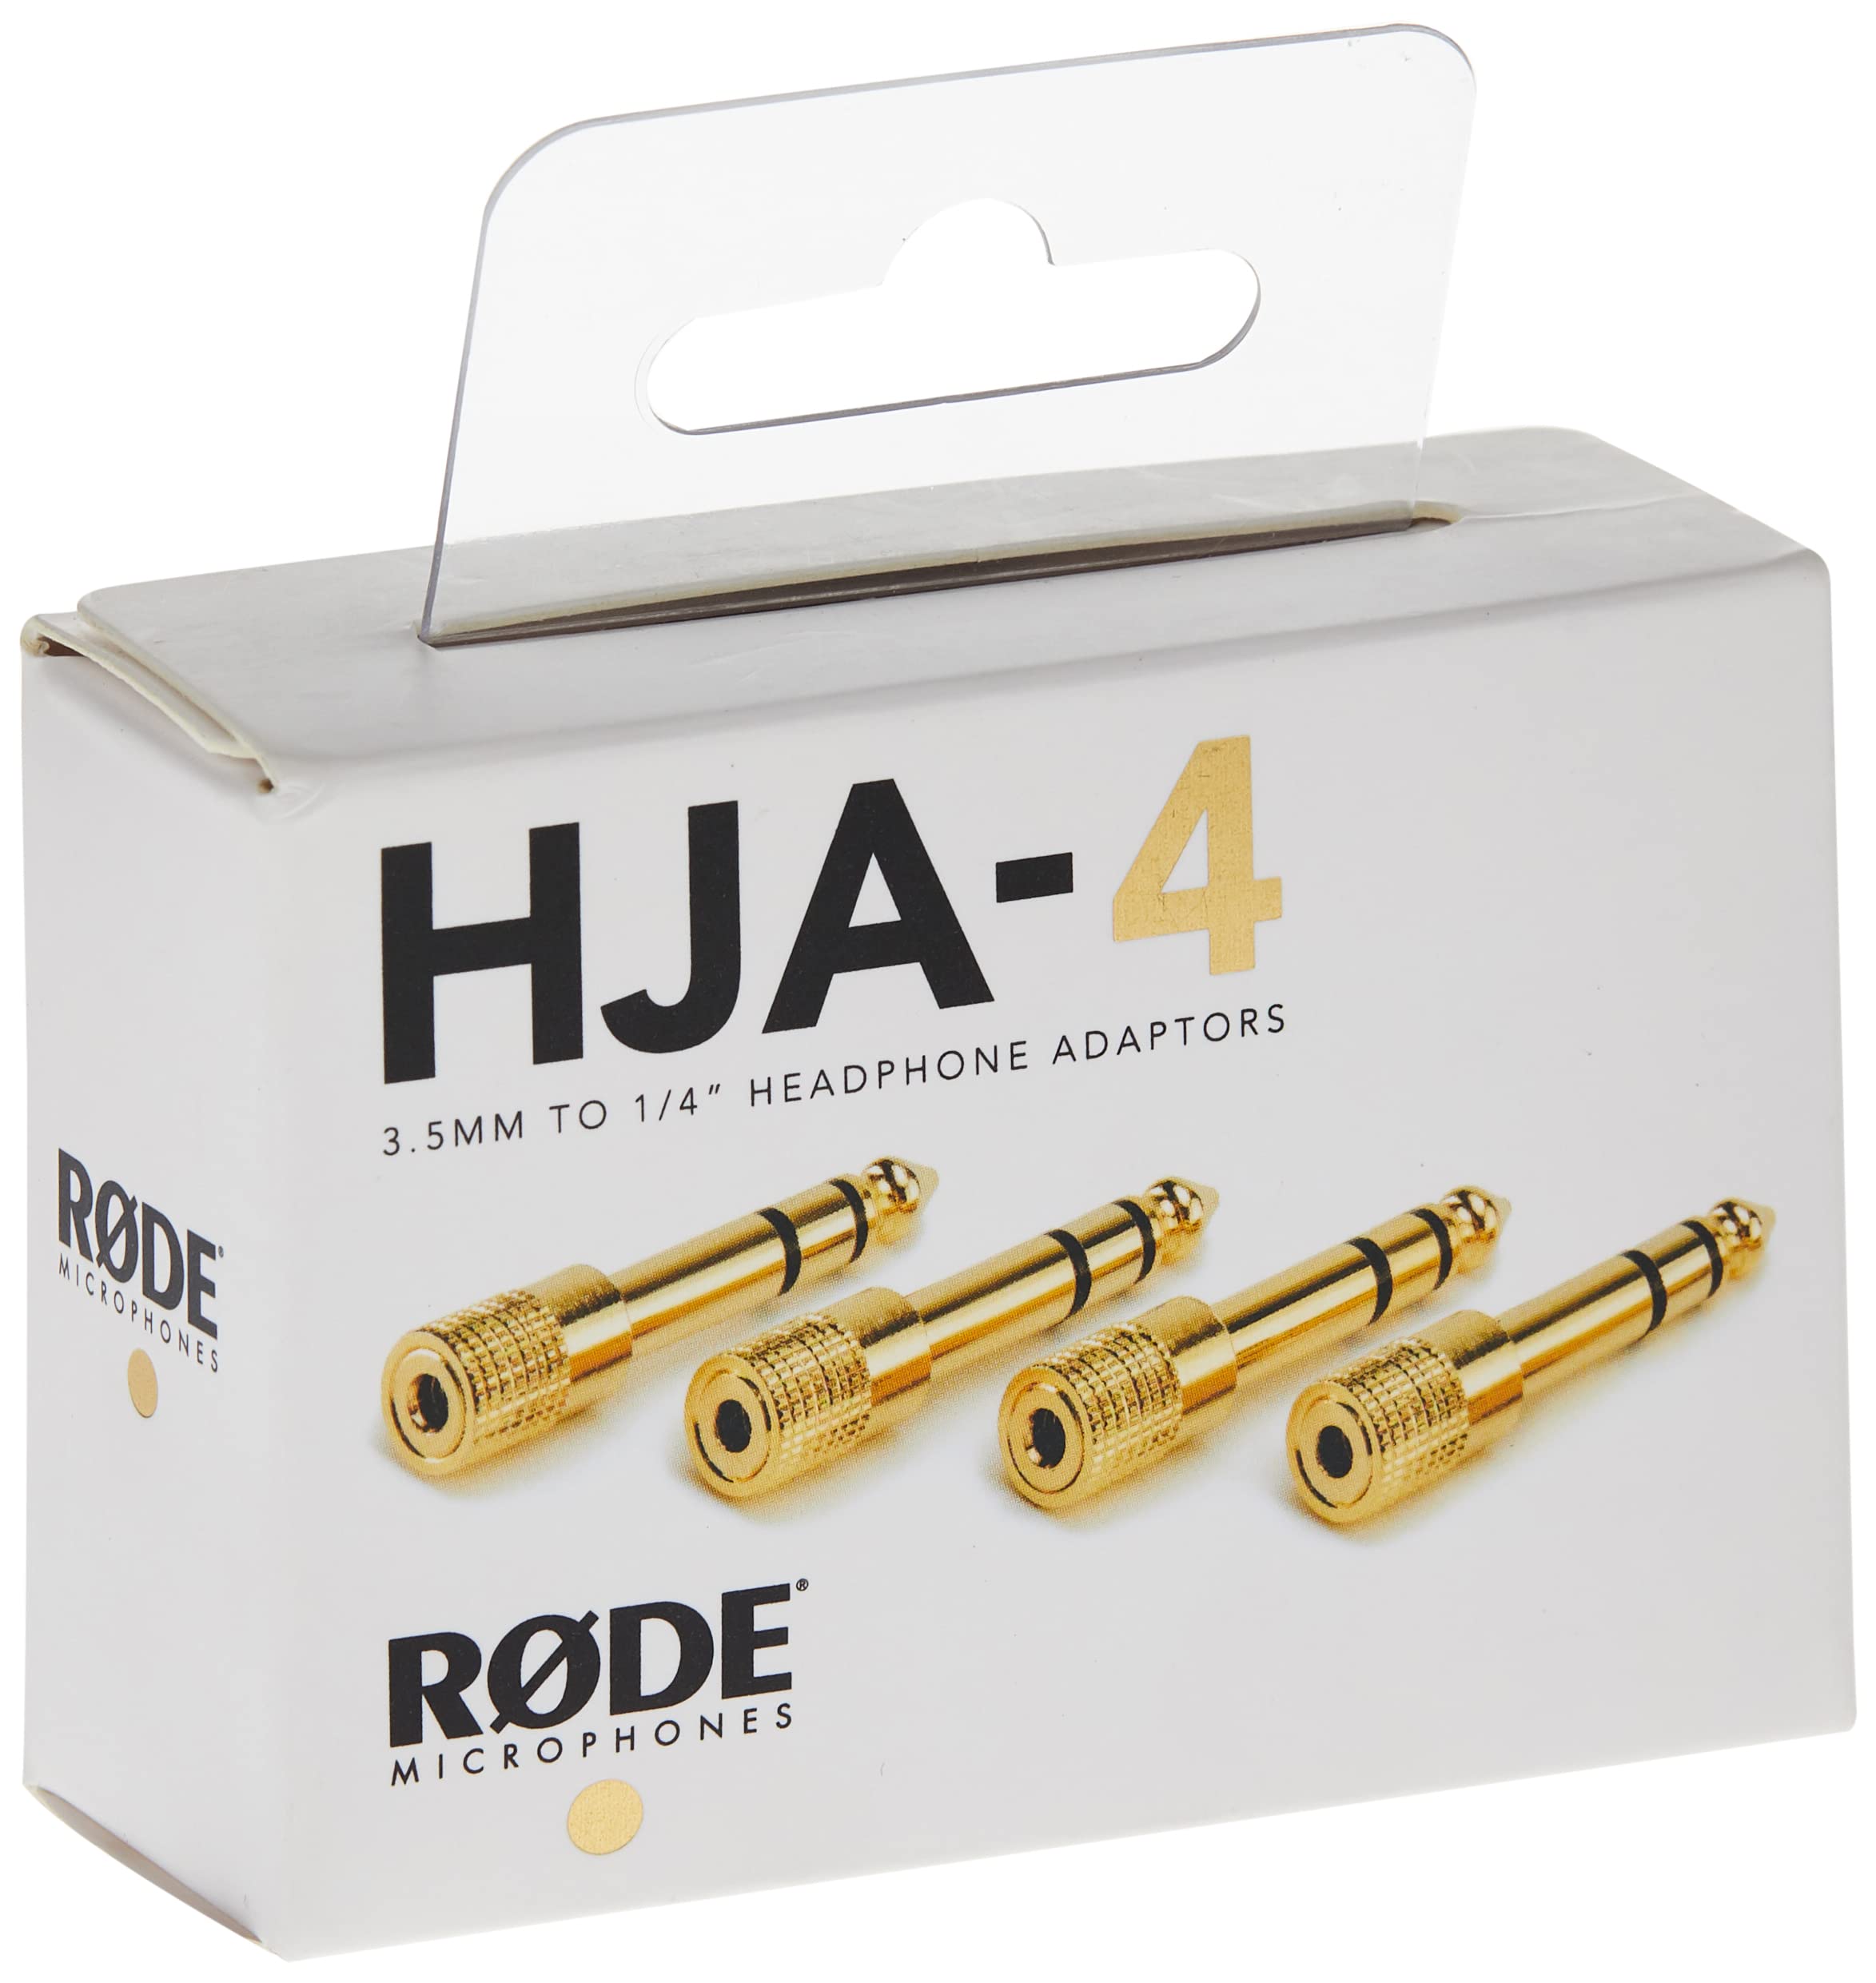 RØDE Headphone Adaptors (HJA-4)